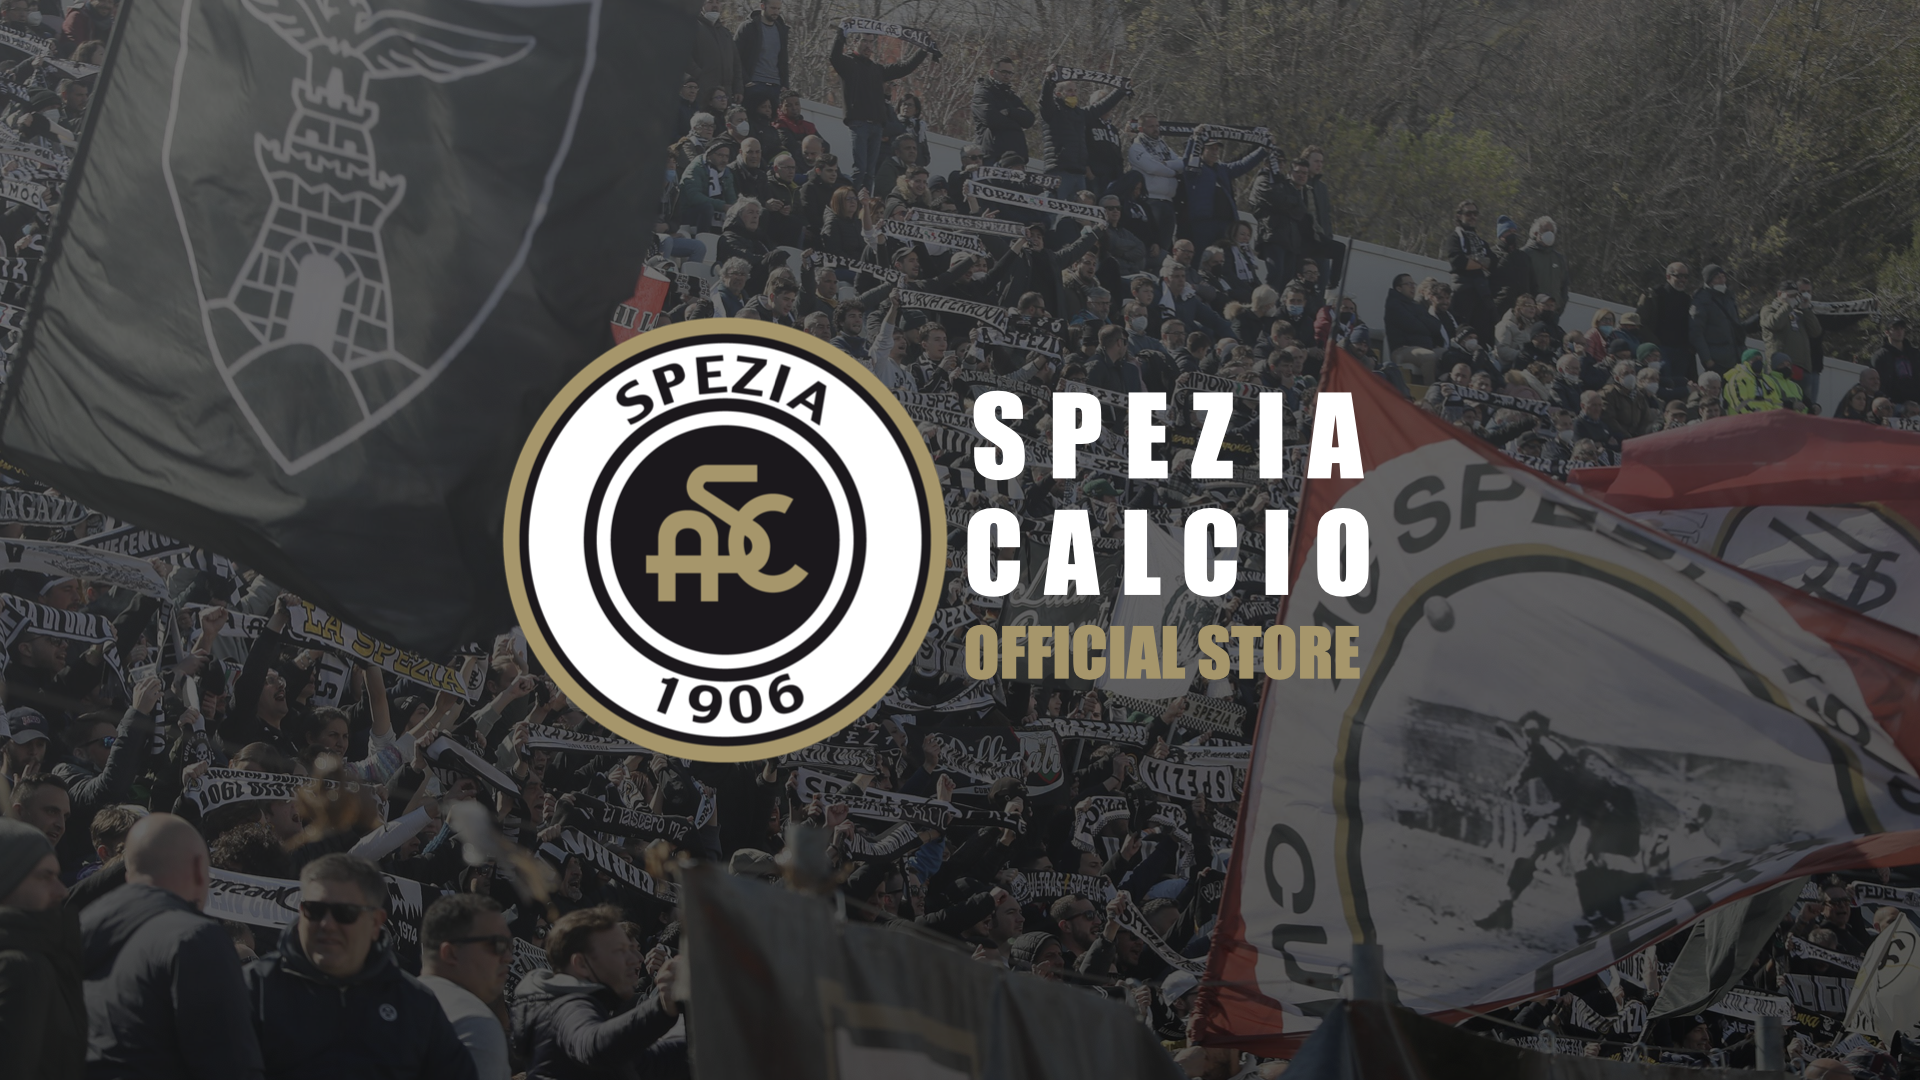 Apertura speciale: Spezia Calcio Store